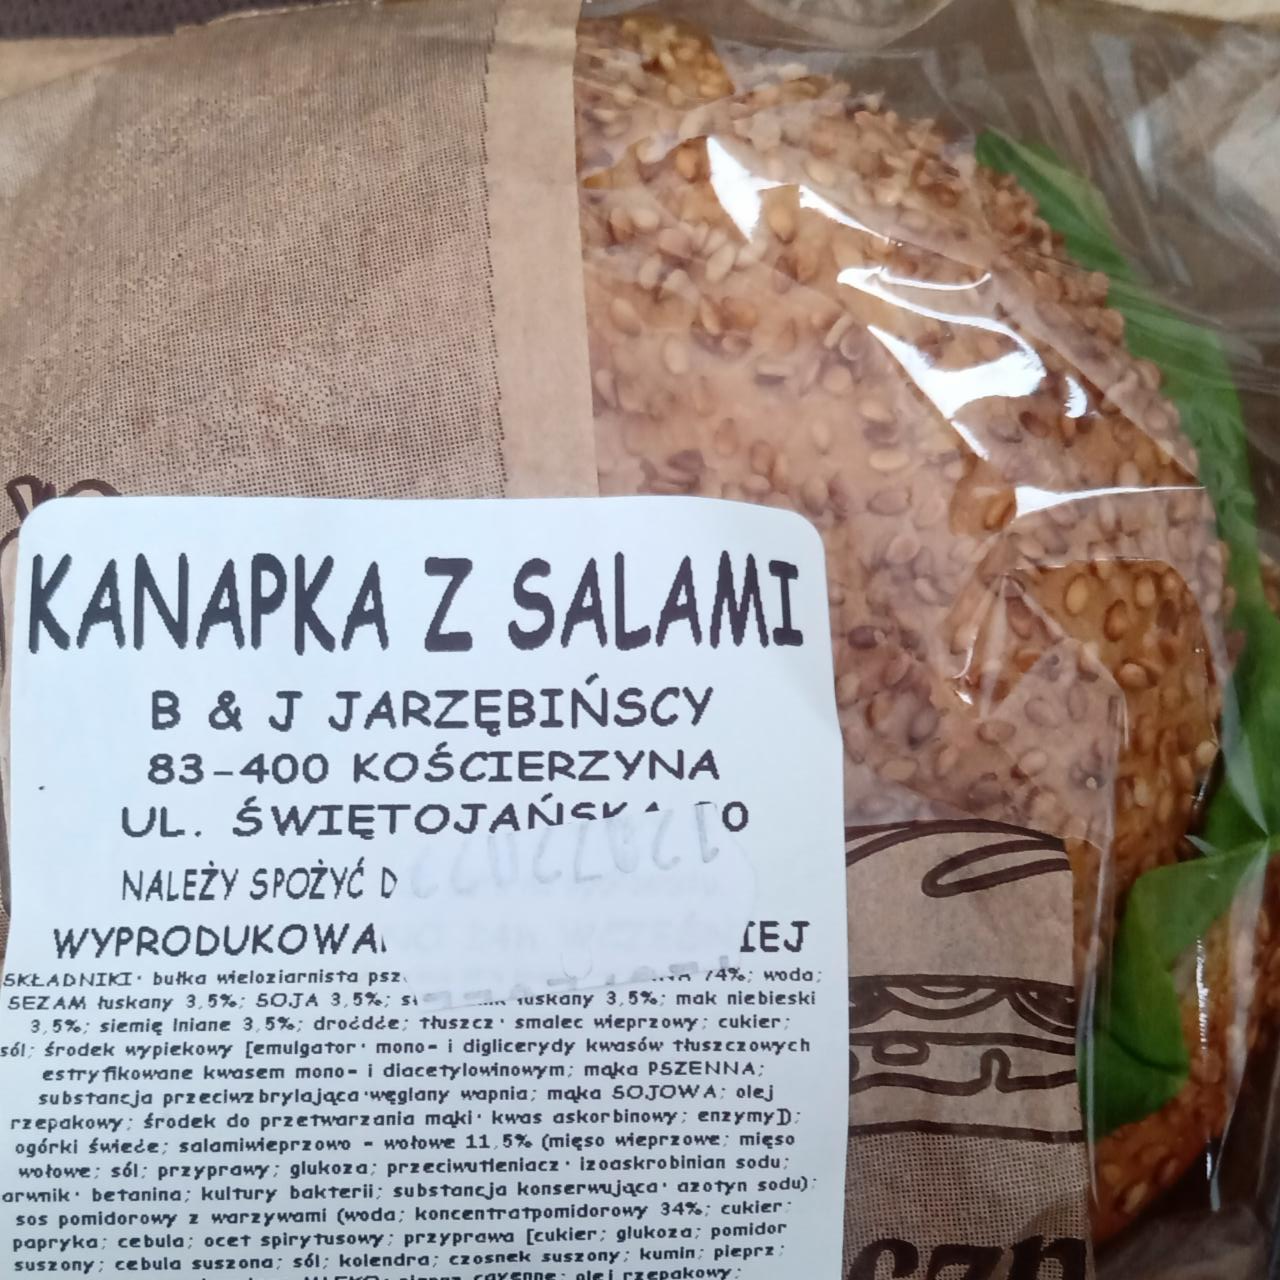 Zdjęcia - kanapka z salami Jarzębińscy